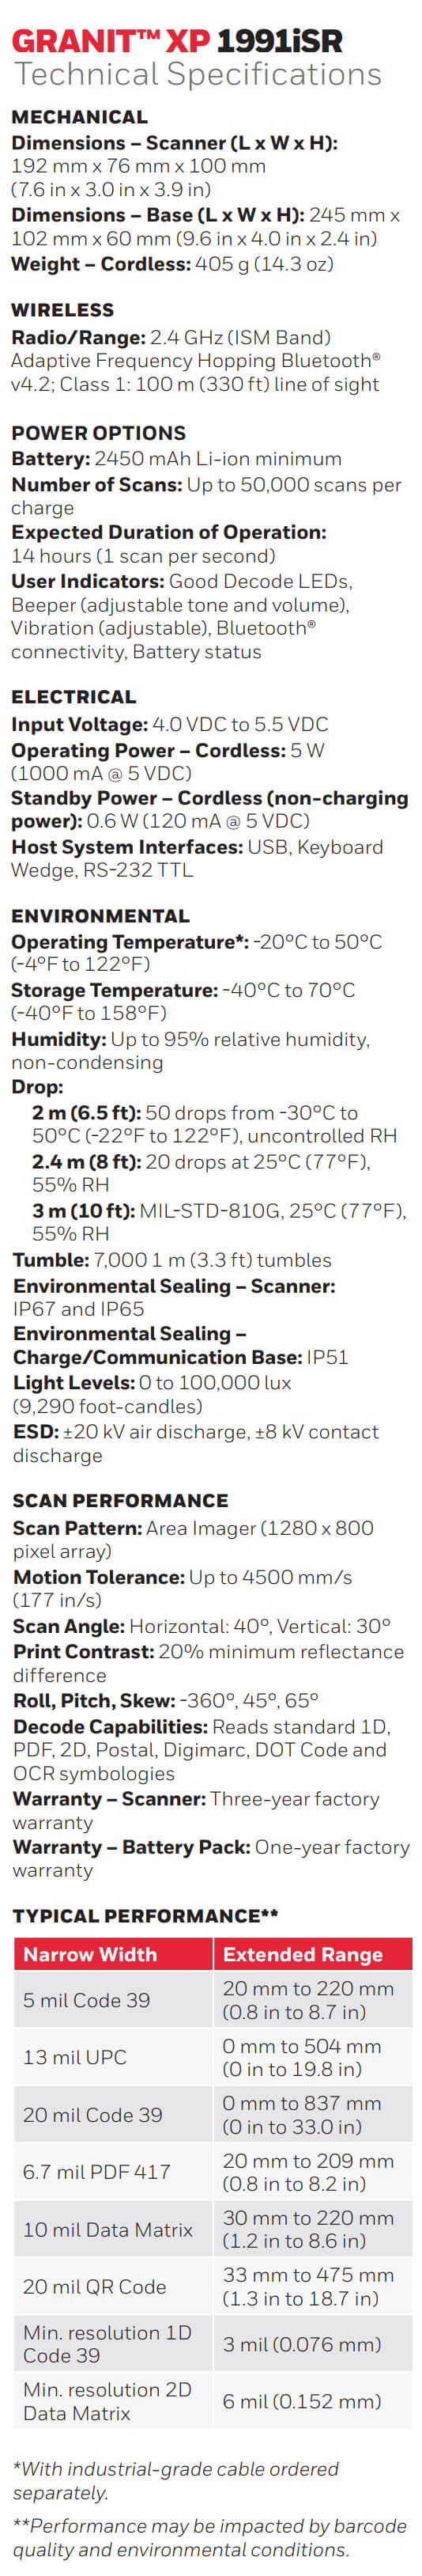 Hoja de datos del escáner de rango estándar ultrarresistente Honeywell Granit 1991iSR